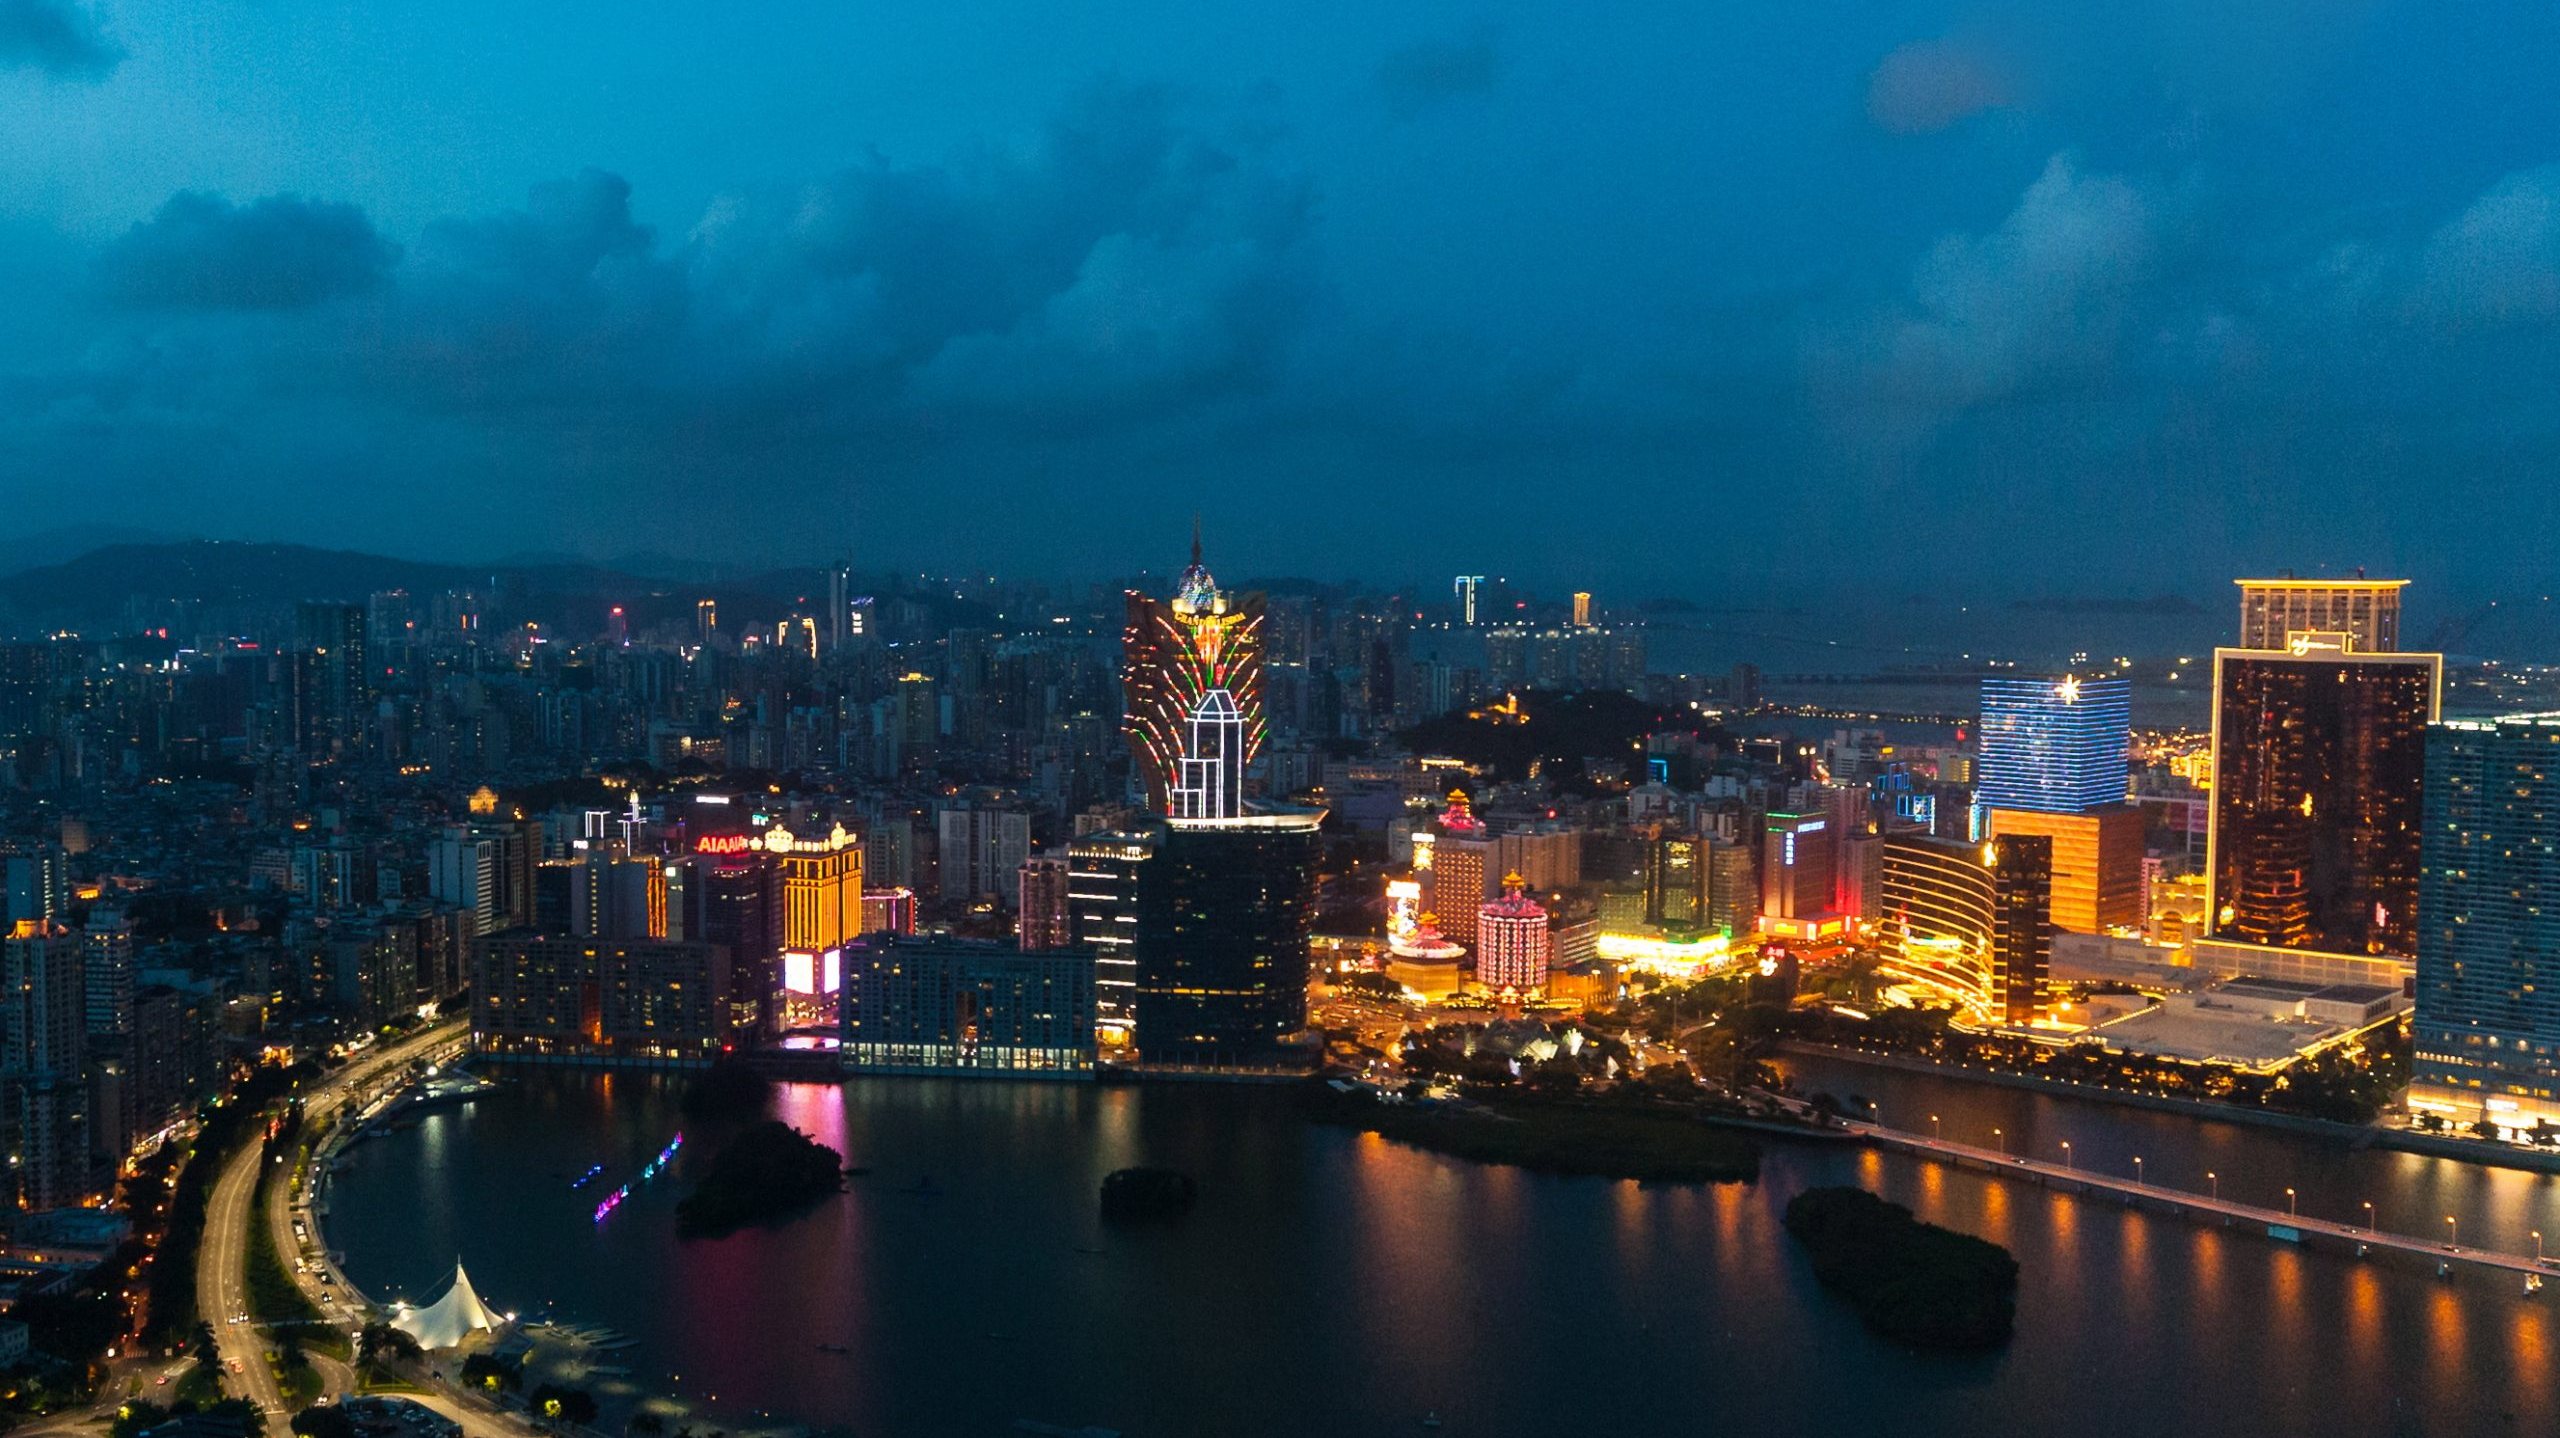 Hotéis e pensões de Macau receberam 2.819.000 hóspedes, menos 76%, em comparação com os primeiros 10 meses de 2019